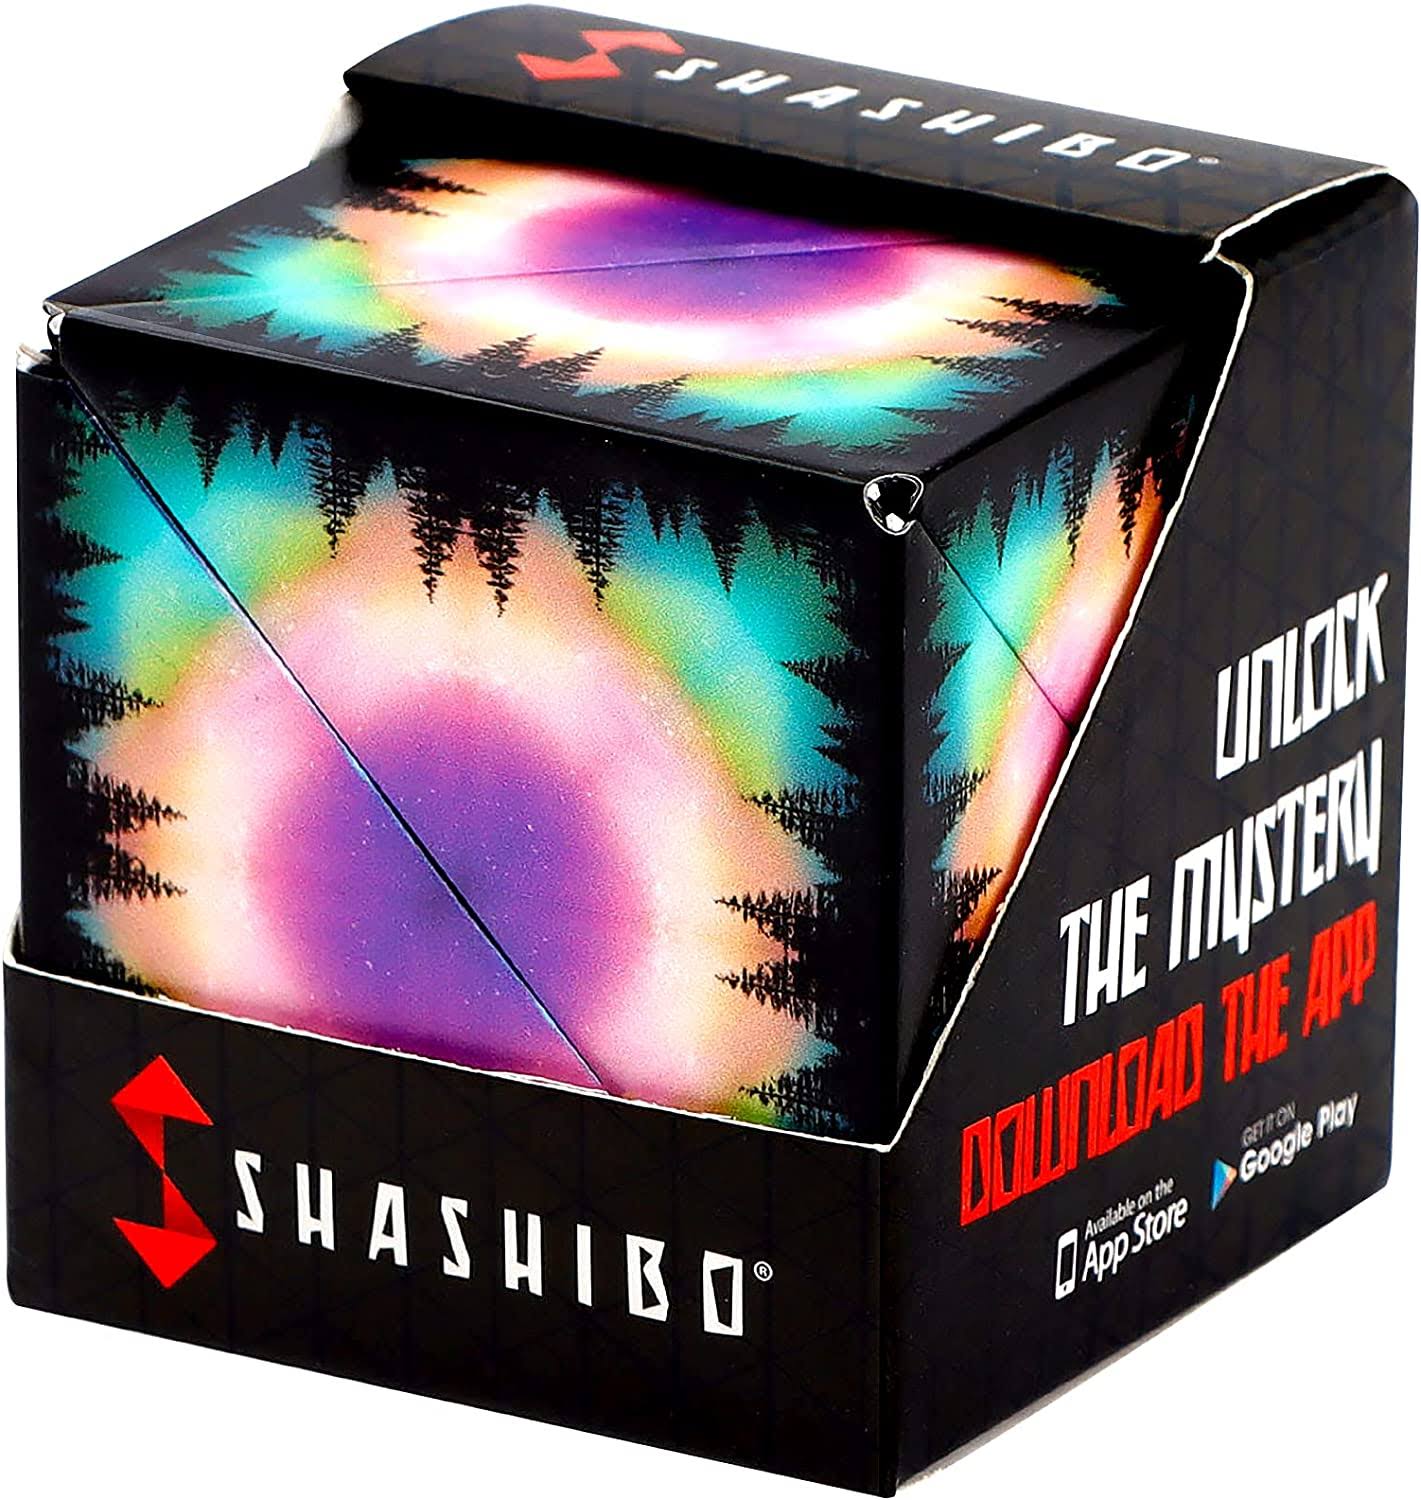 Shashibo Shape Shifting Box - Award-Winning